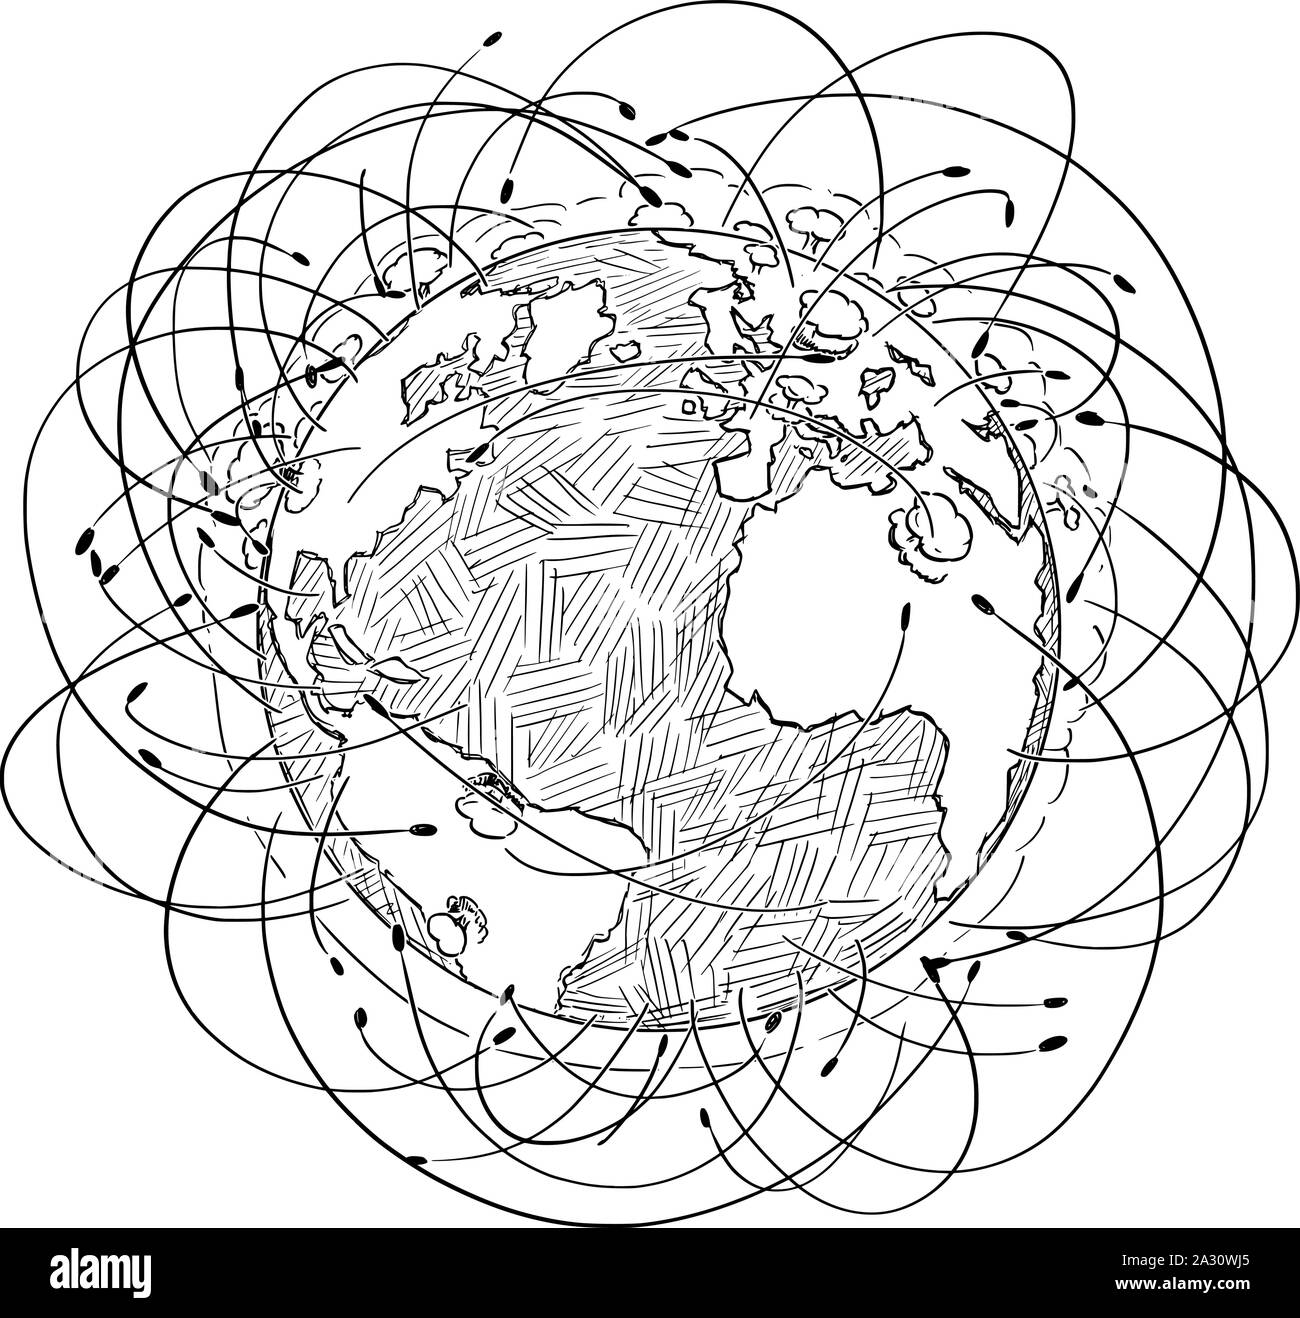 Vector illustration noir et blanc de la planète Terre entourée par des roquettes et les explosions nucléaires. Concept de guerre nucléaire. Illustration de Vecteur